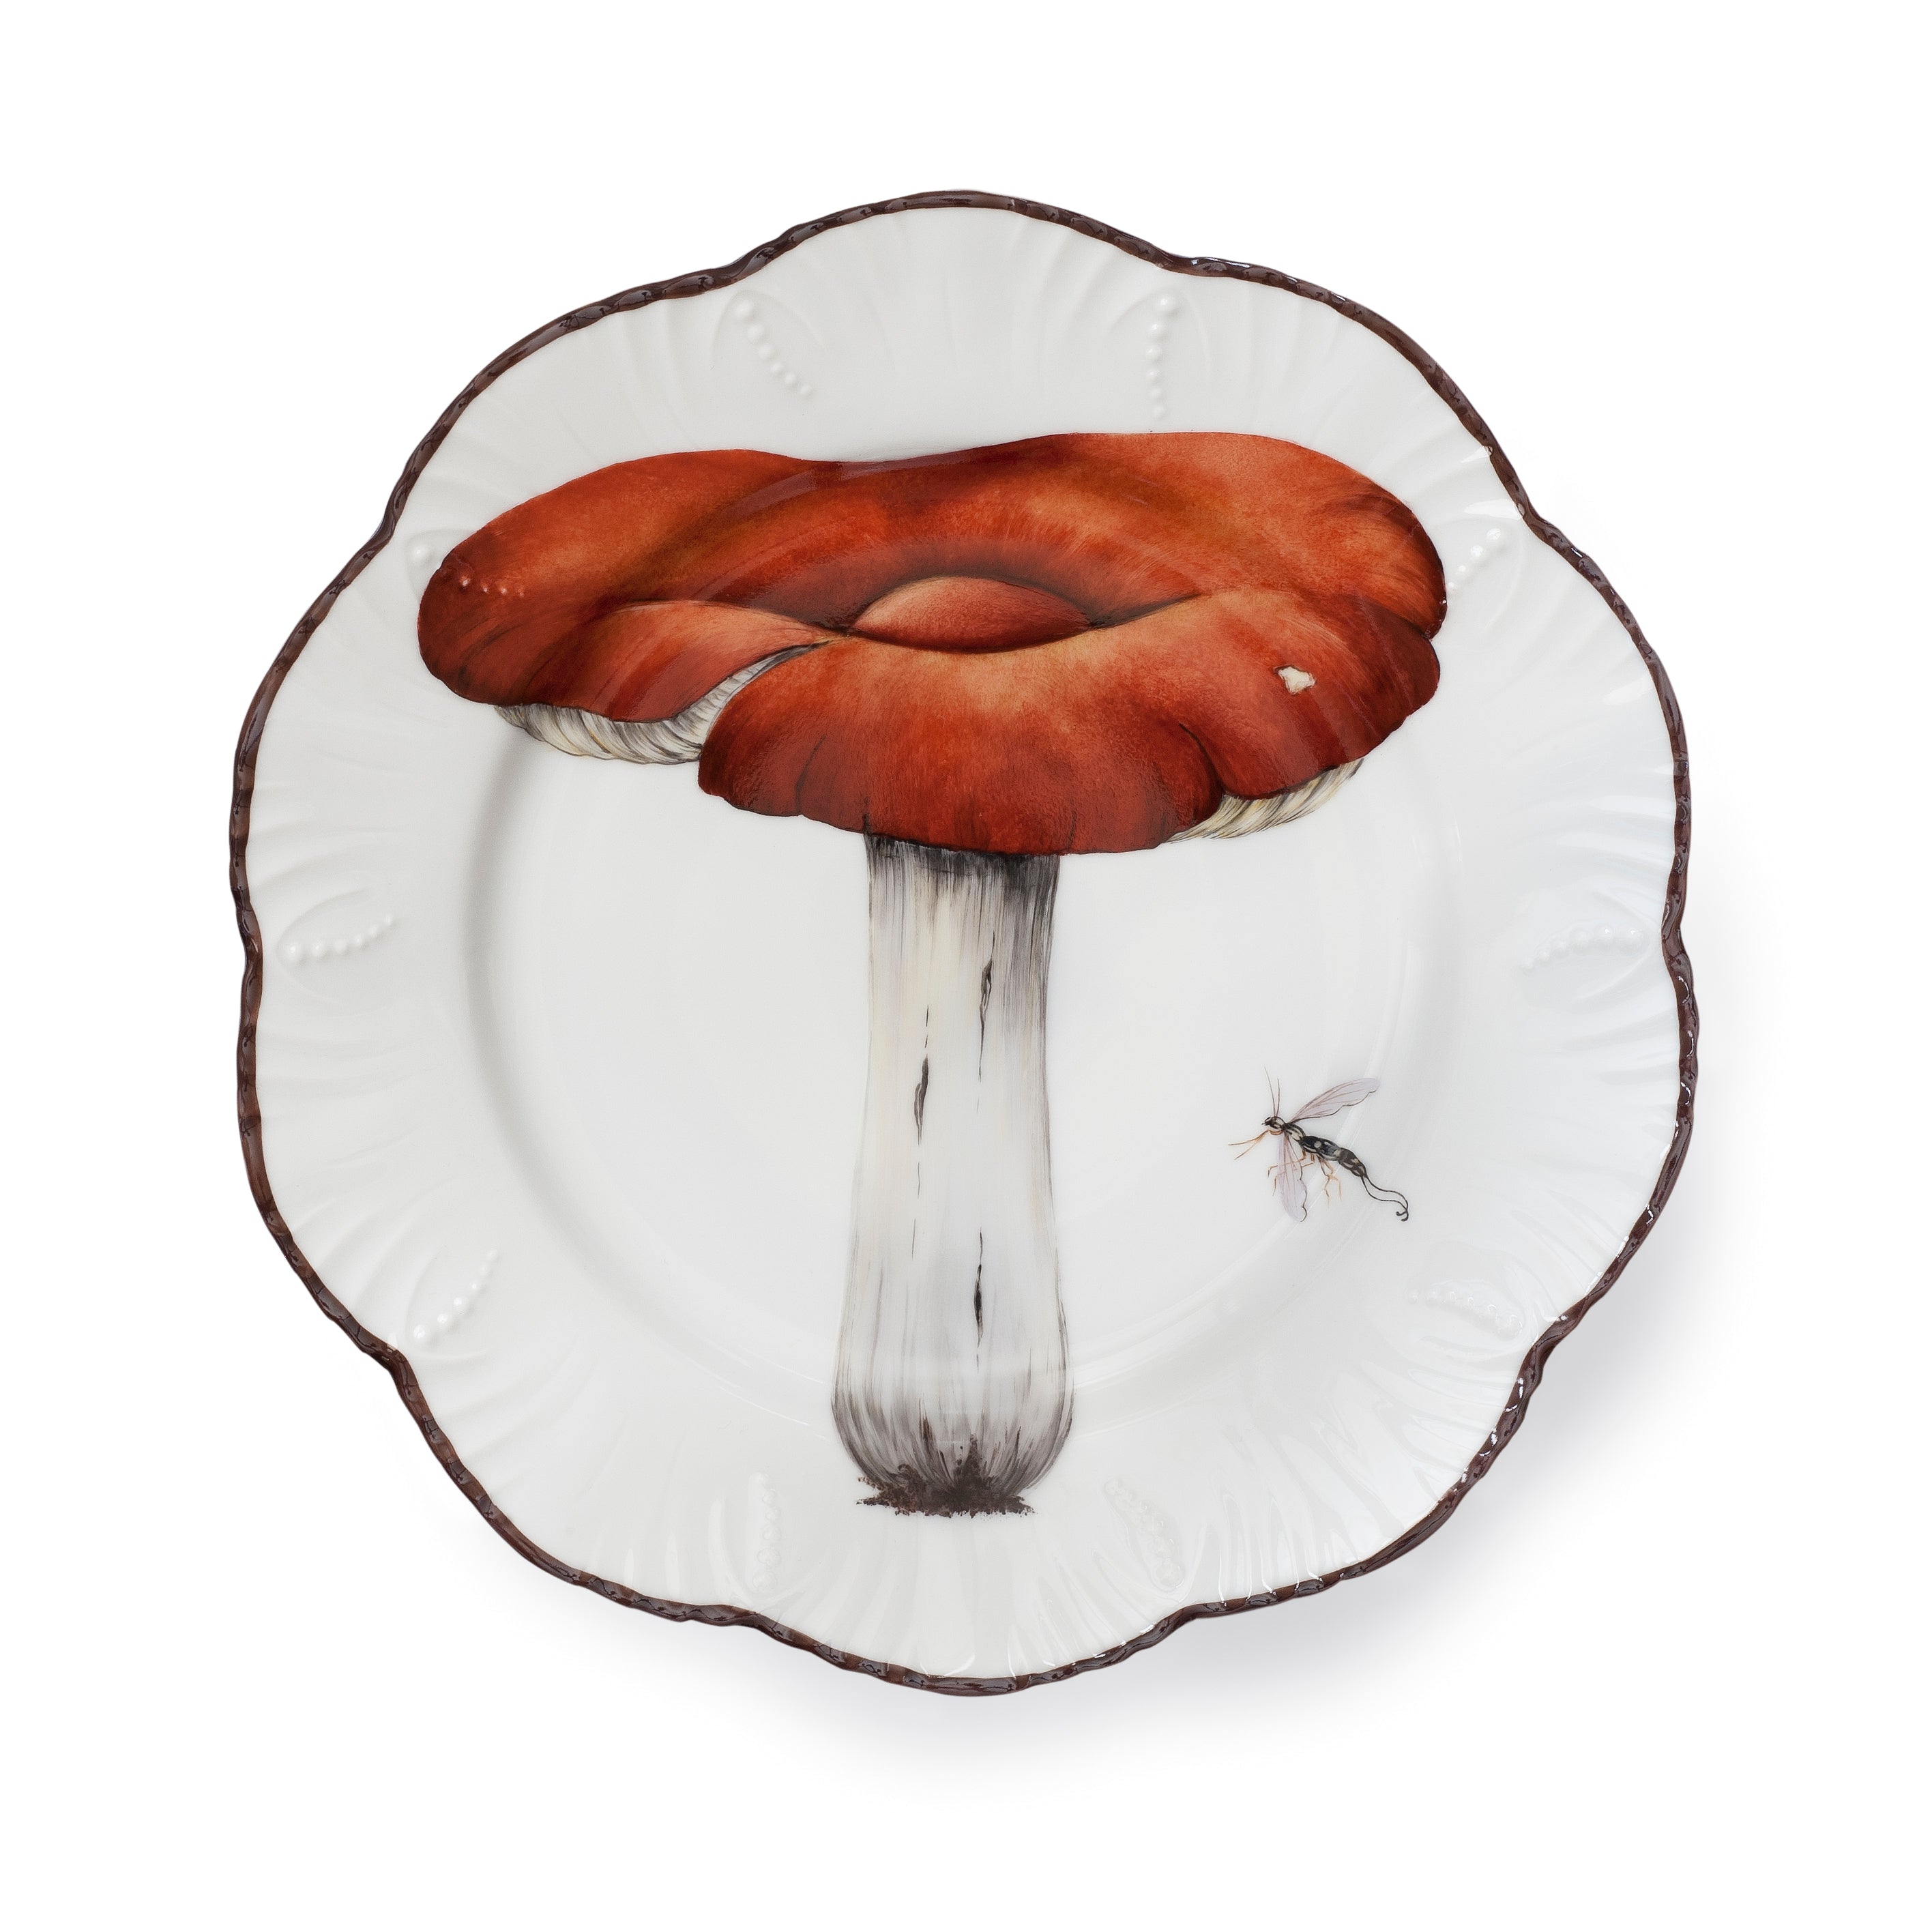 Les champignons - Dinner plate 06